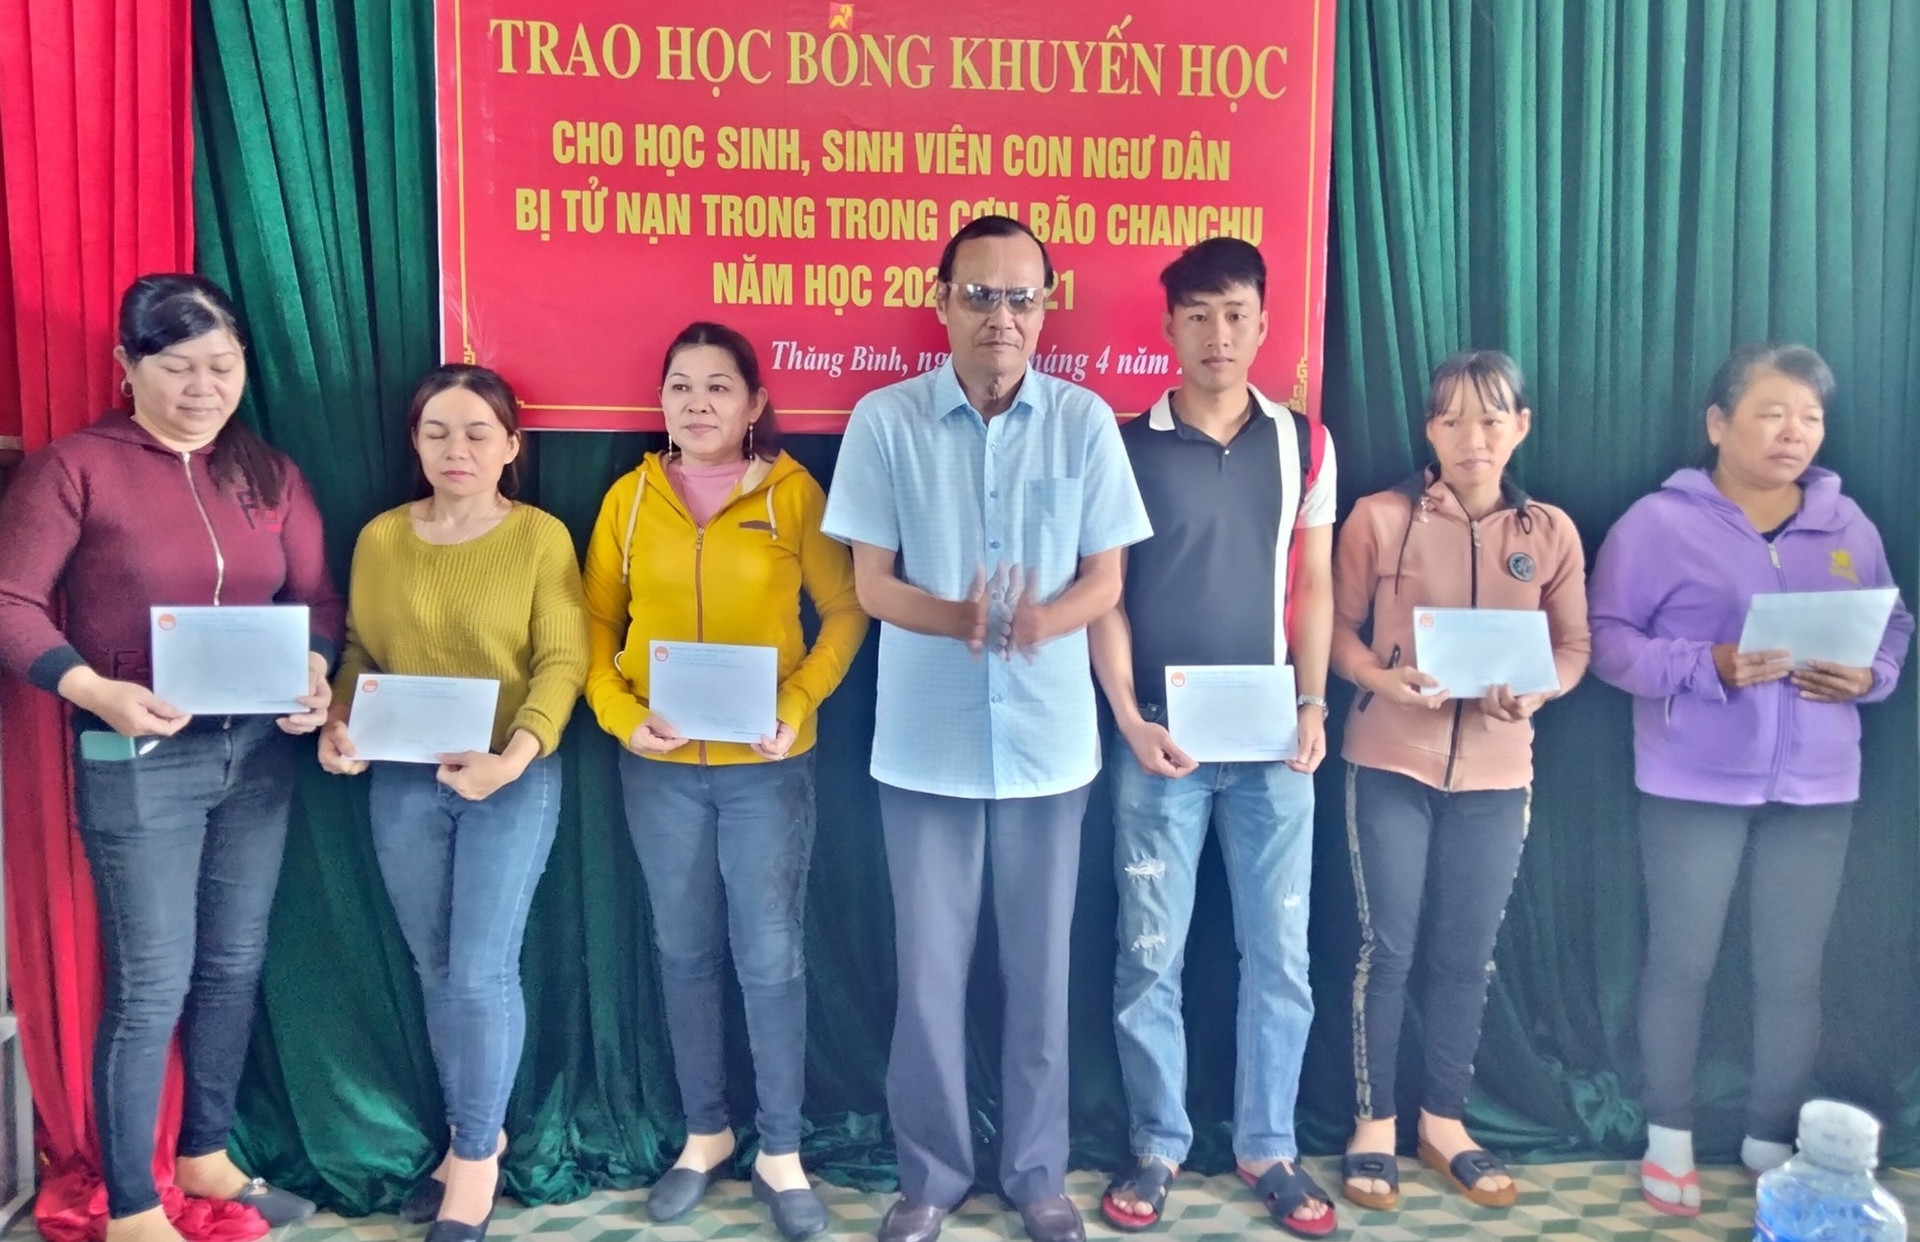 ội Khuyến học Quảng Nam trao học bổng cho các em học sinh con ngư dân bị tử nạn trong bão Chanchu năm học 2020-2021.